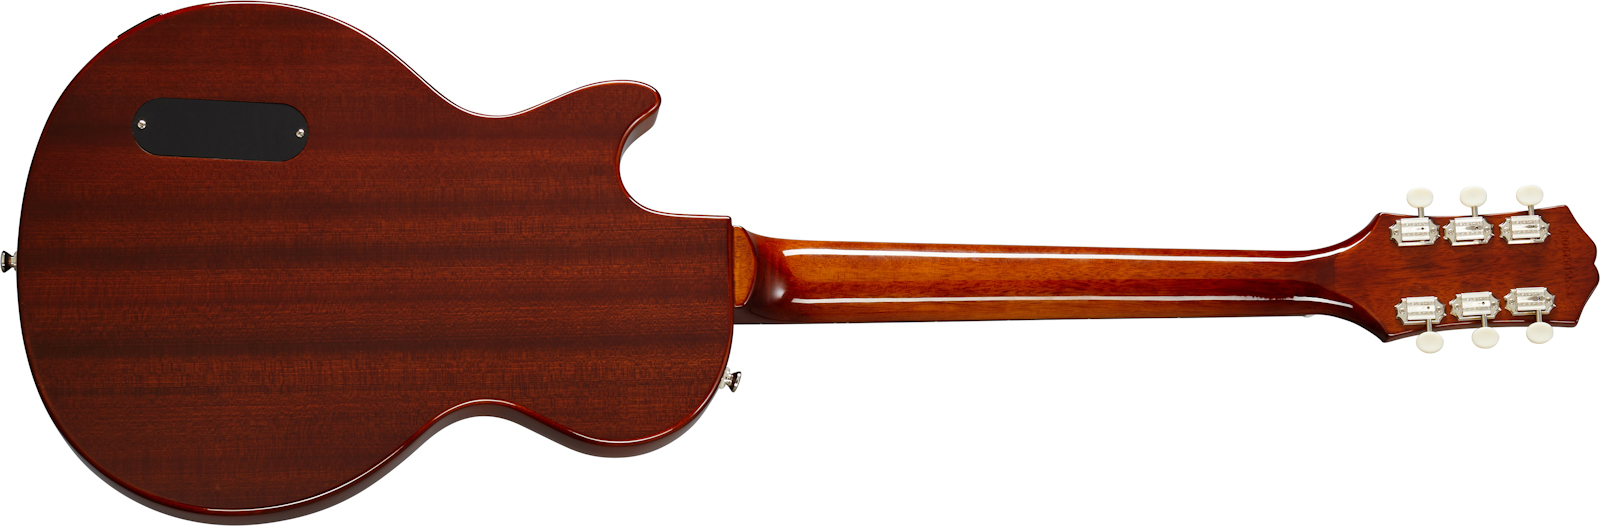 Epiphone Les Paul Junior P90 Ht Rw - Vintage Sunburst - Single cut electric guitar - Variation 1